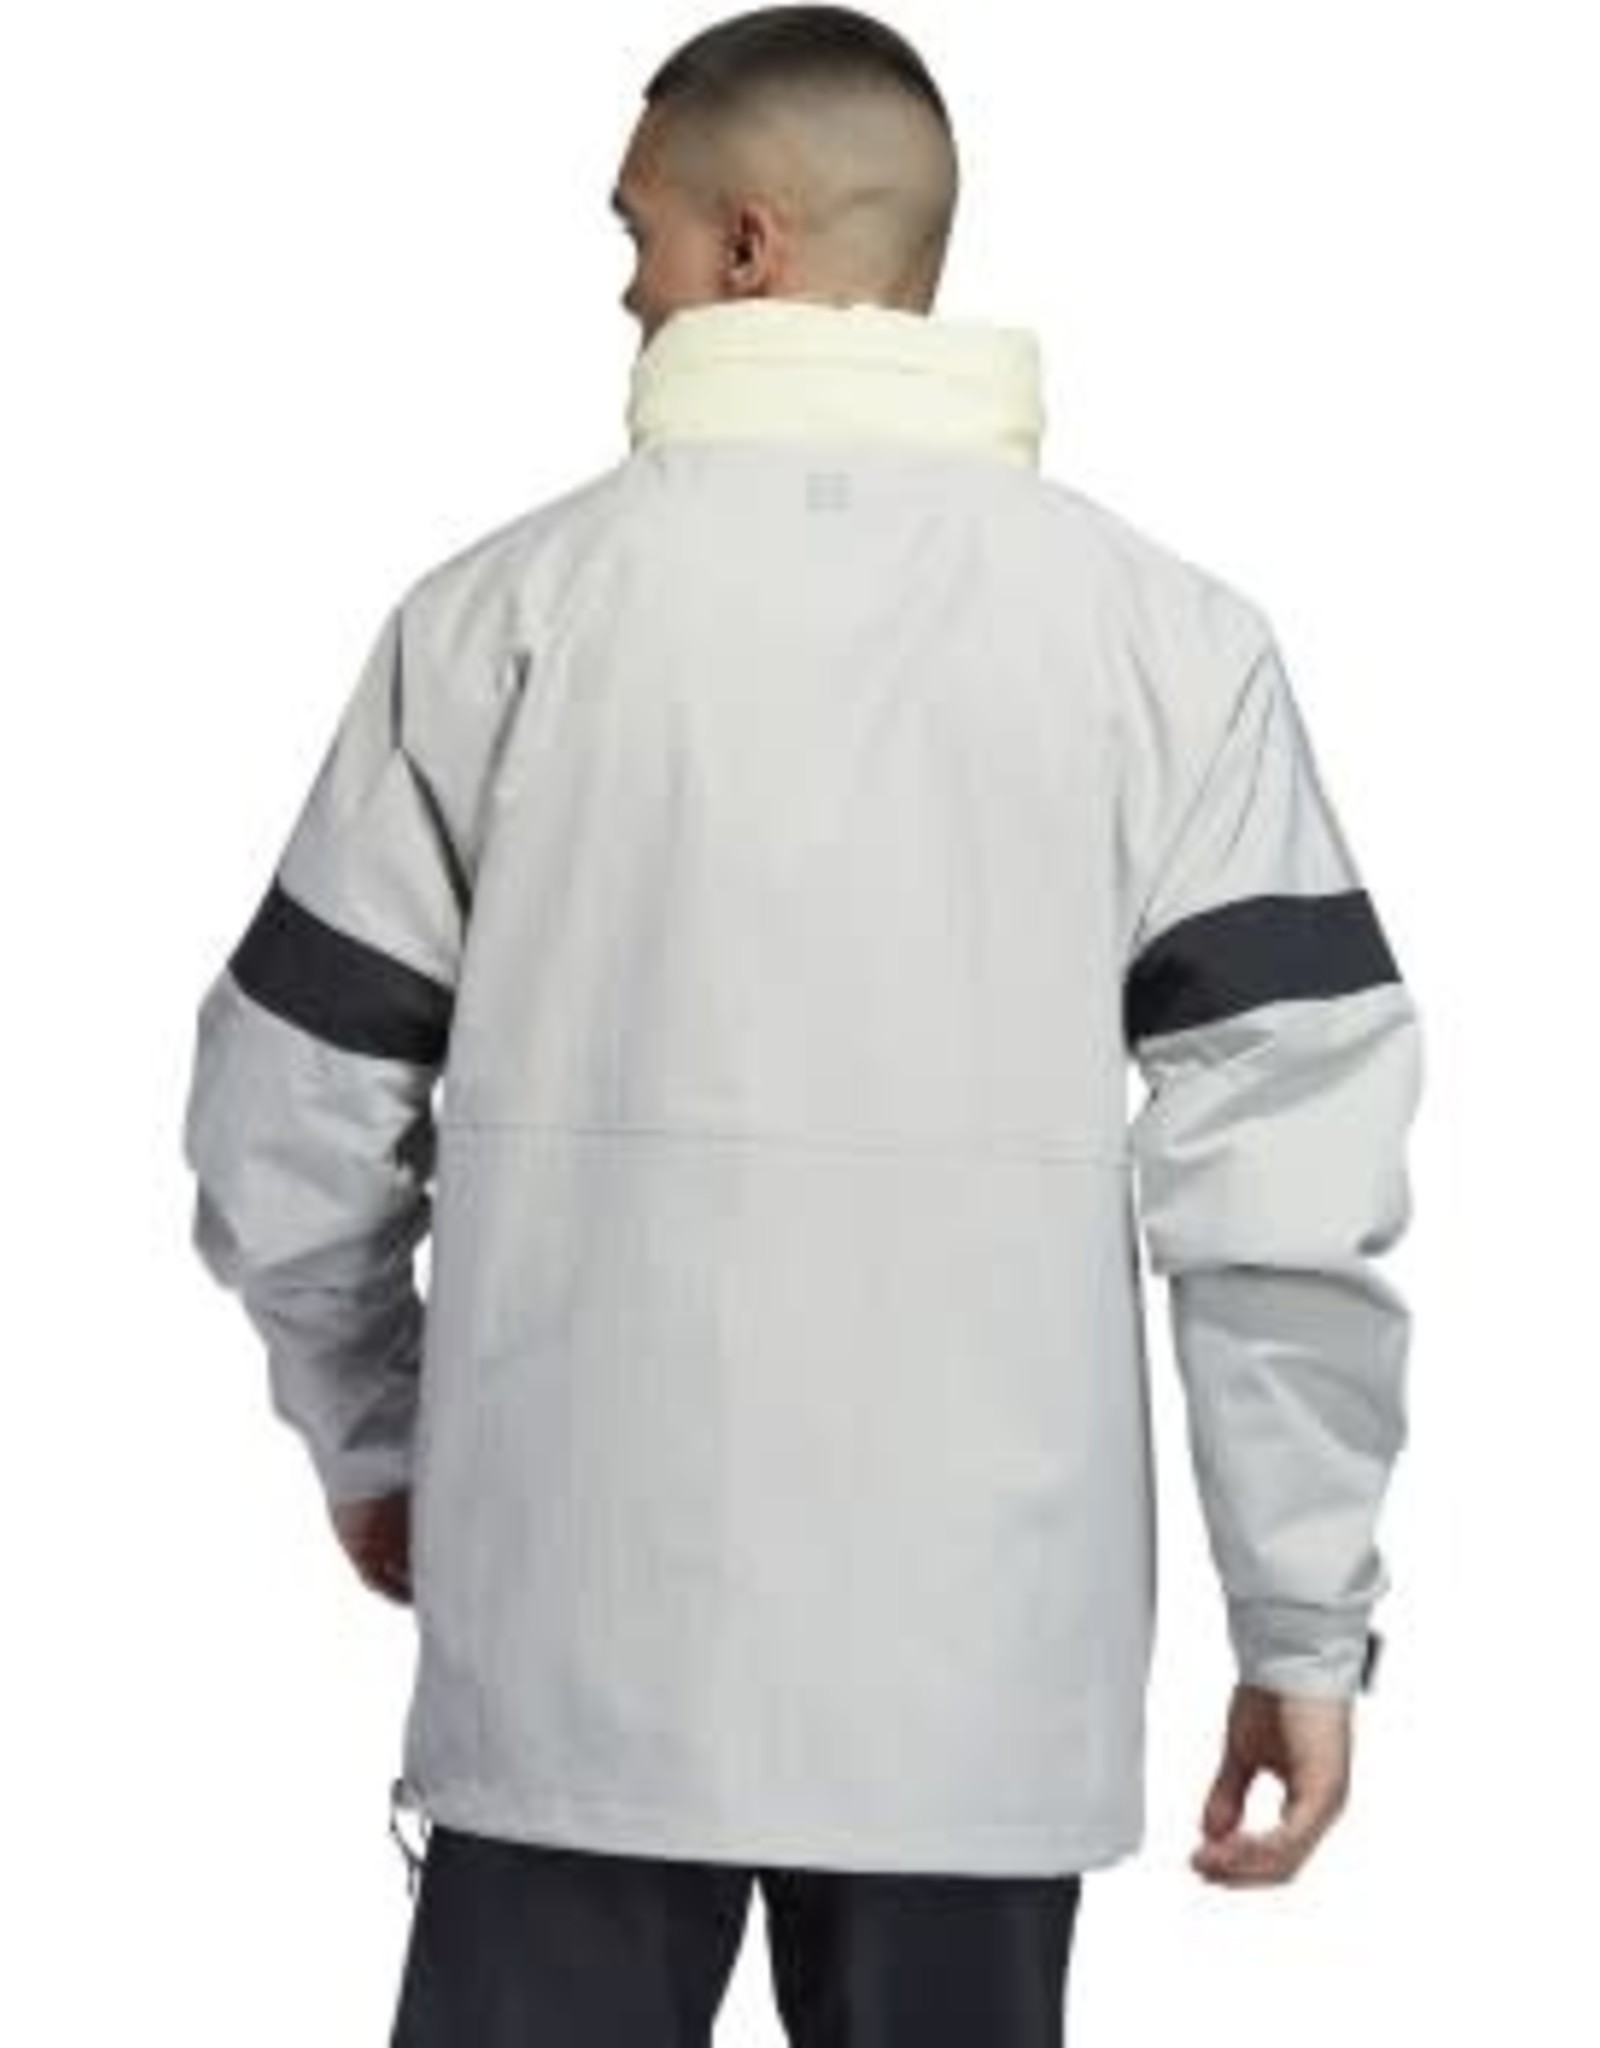 bb snowbreaker jacket adidas